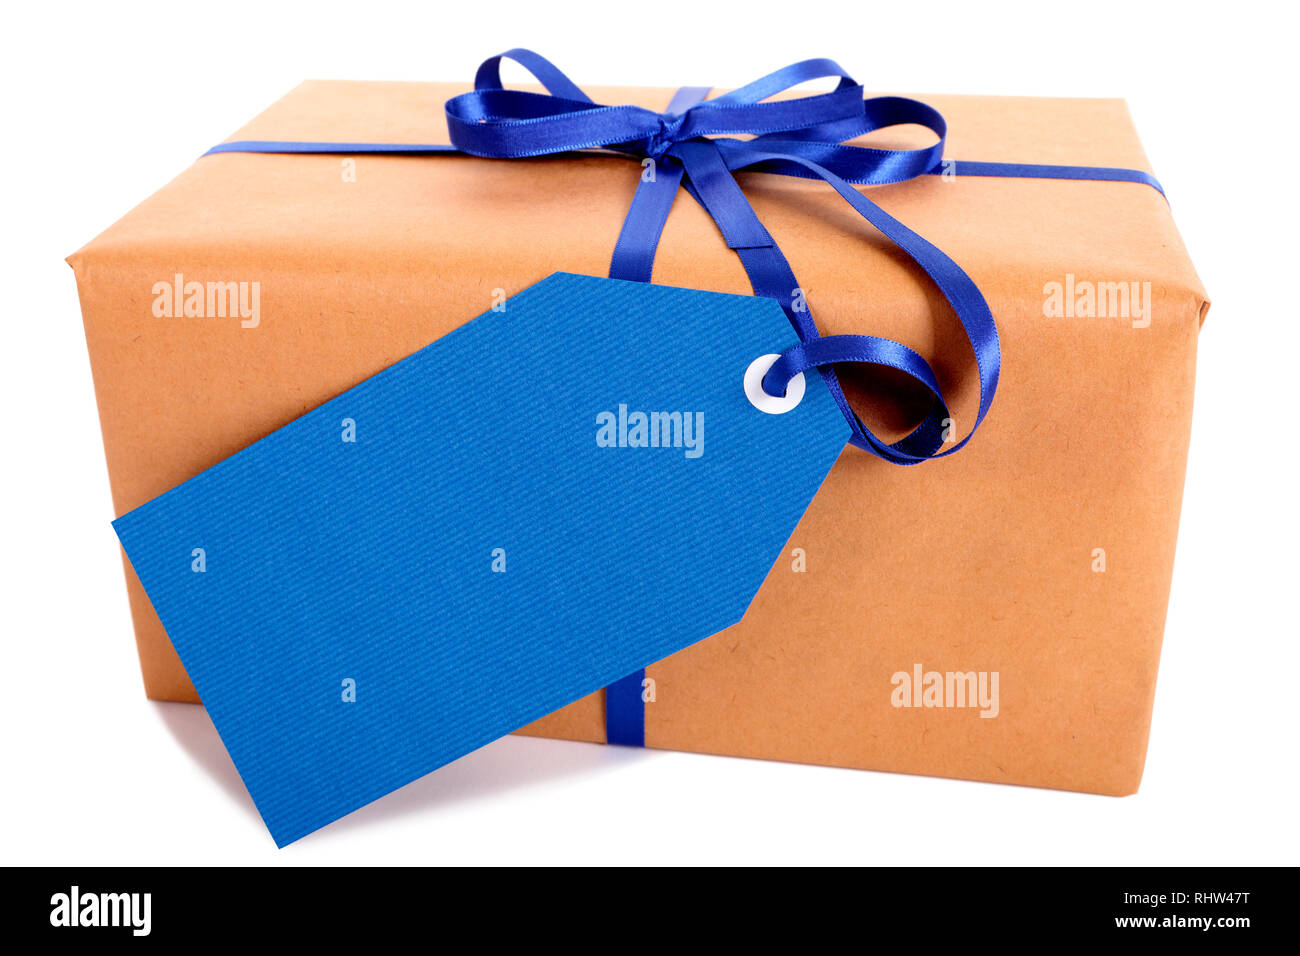 Einfachen braunen Papier Paket oder Paket, blau Geschenk Tag oder Etikett und Farbband auf weißem Hintergrund, Seitenansicht Stockfoto